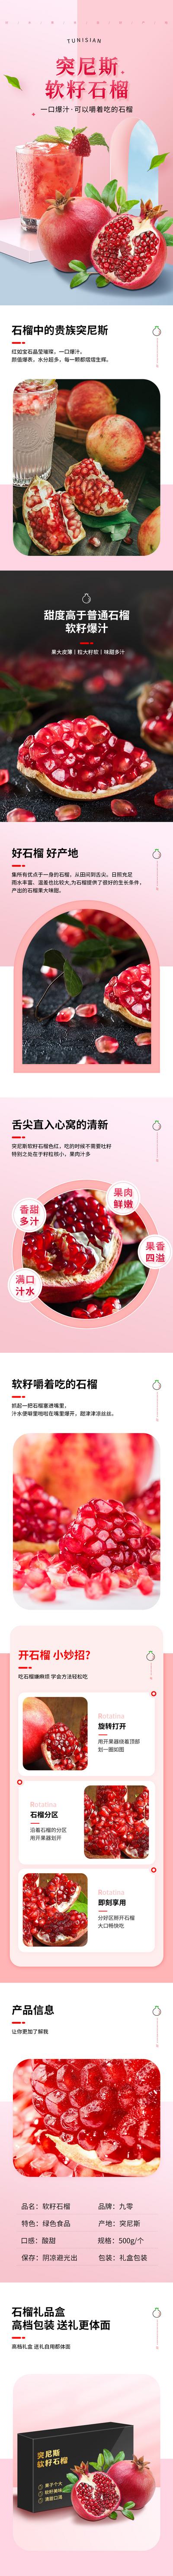 南门网 广告 海报 电商 石榴 详情页 水果 长图